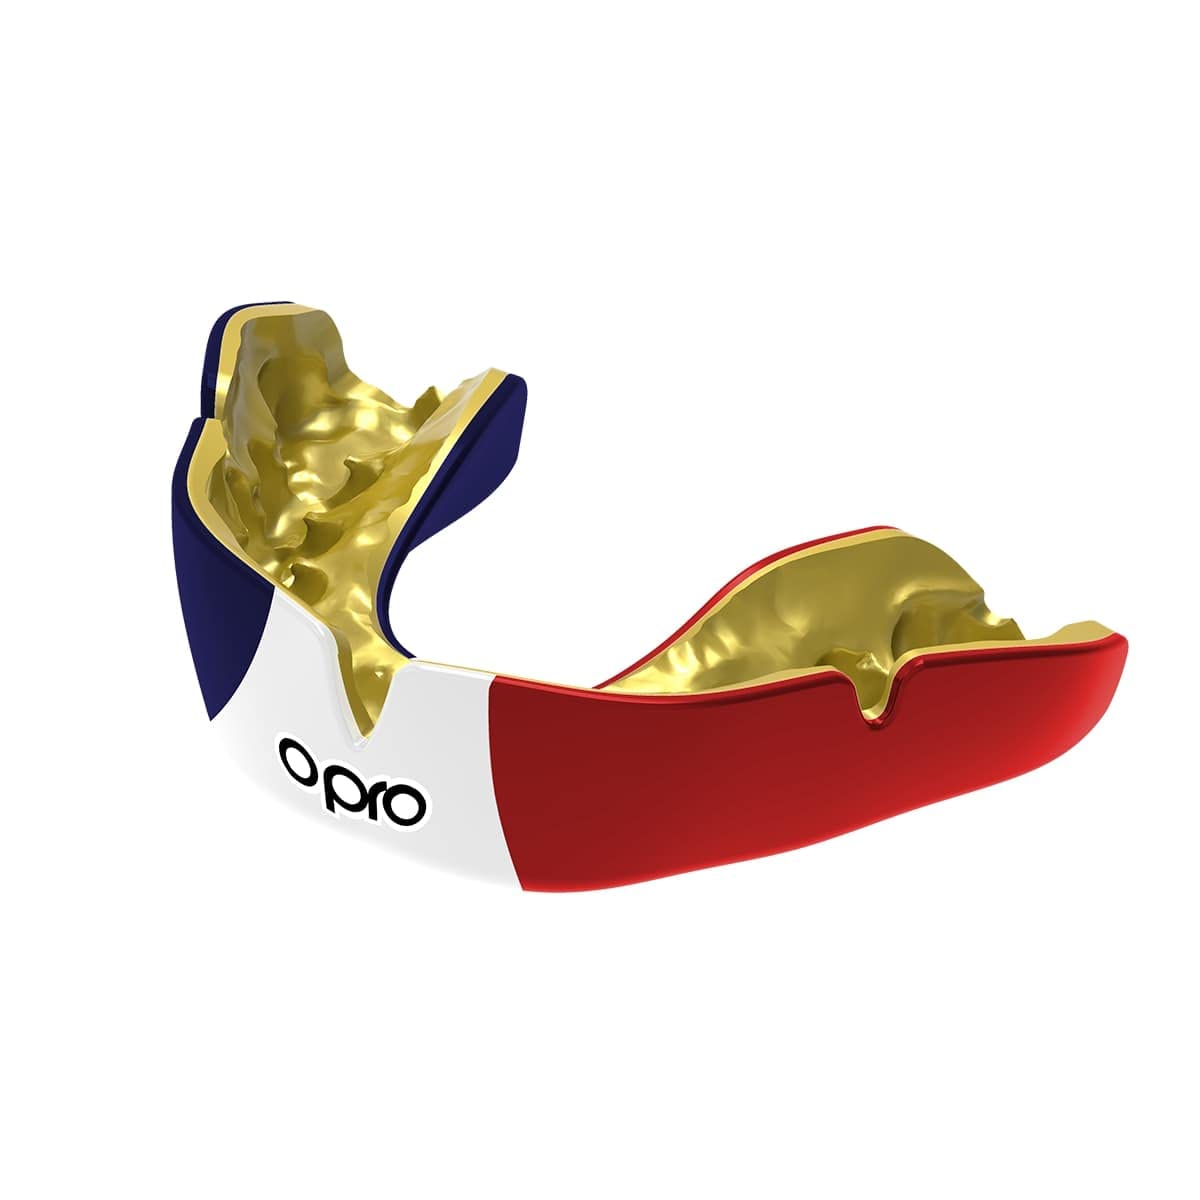 OPRO Instant Custom-Fit Mundschutz, revolutionäre Anpassungstechnologie für ultimativen Komfort und Schutz, Zahnschutz für Rugby, Boxen, Hockey, Kampfsport (Frankreich, Erwachsene)